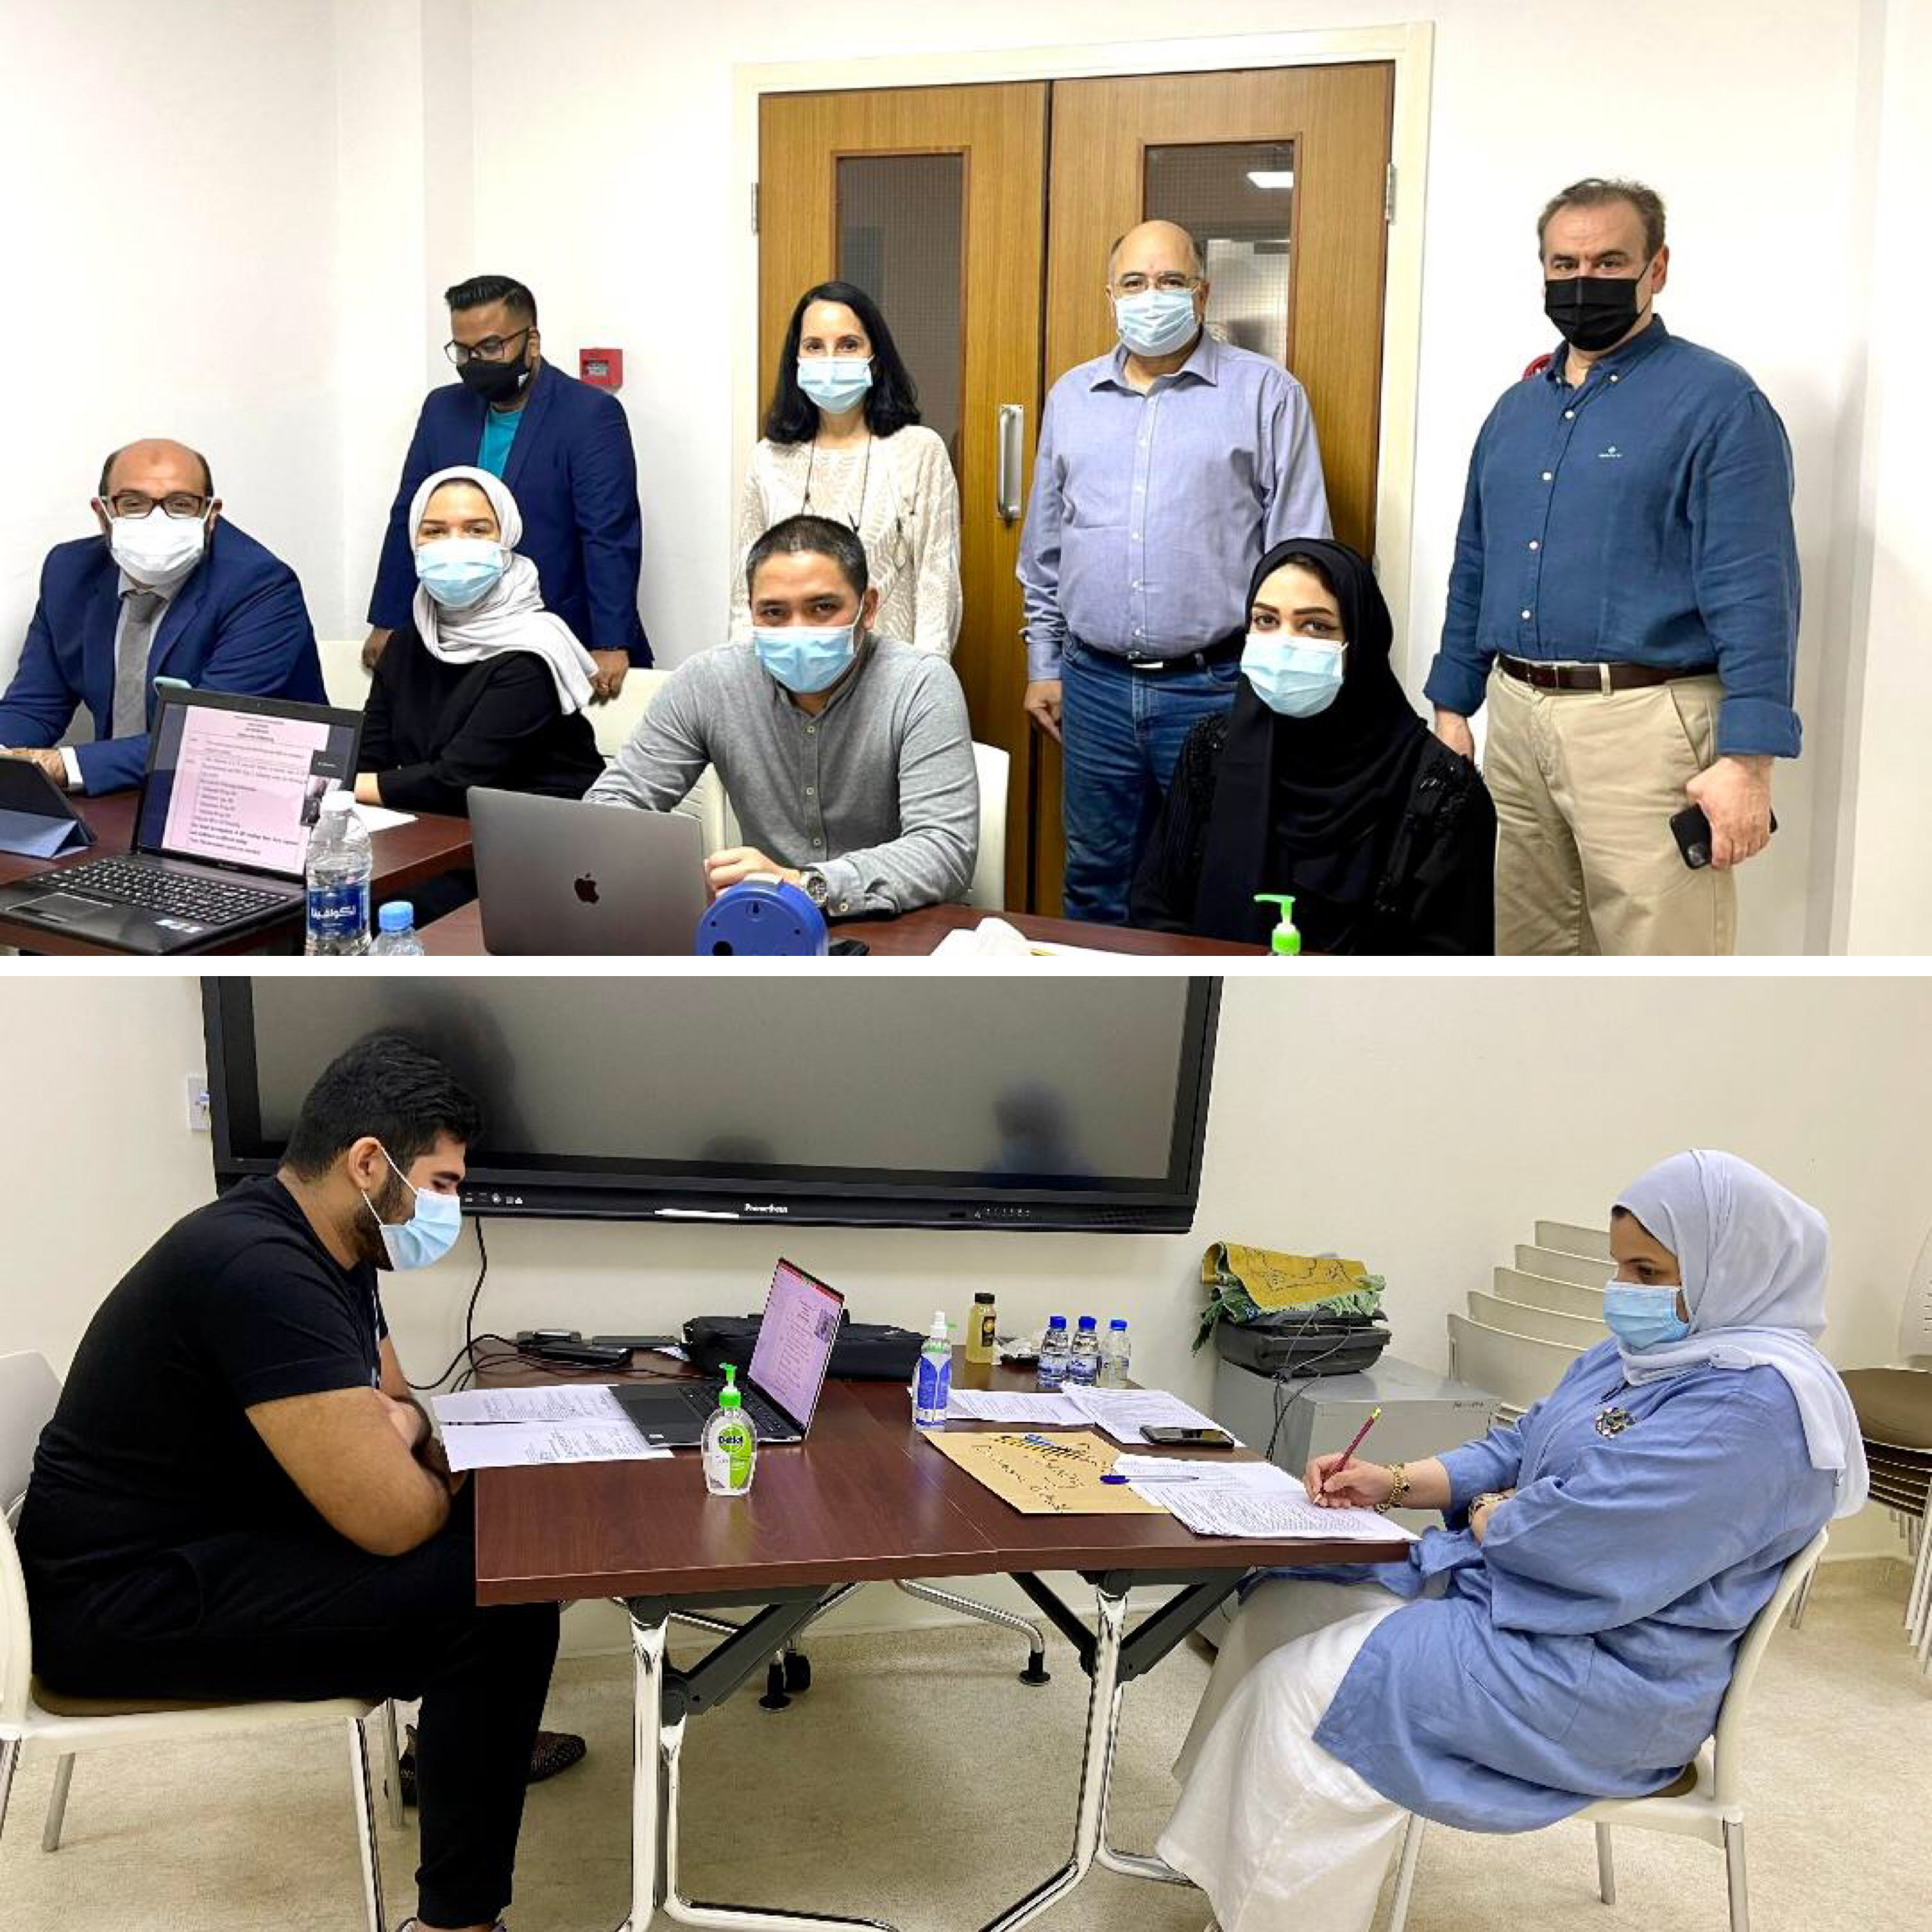 عقد الإمتحان السريري للمجلس العربي للتخصصات الطبية لفرع طب الأسرة لخريجي برنامج طب العائلة البالغ عددهم 37 طبيب و طبيبة من مملكة البحرين للدفعتين 2019 - 2020